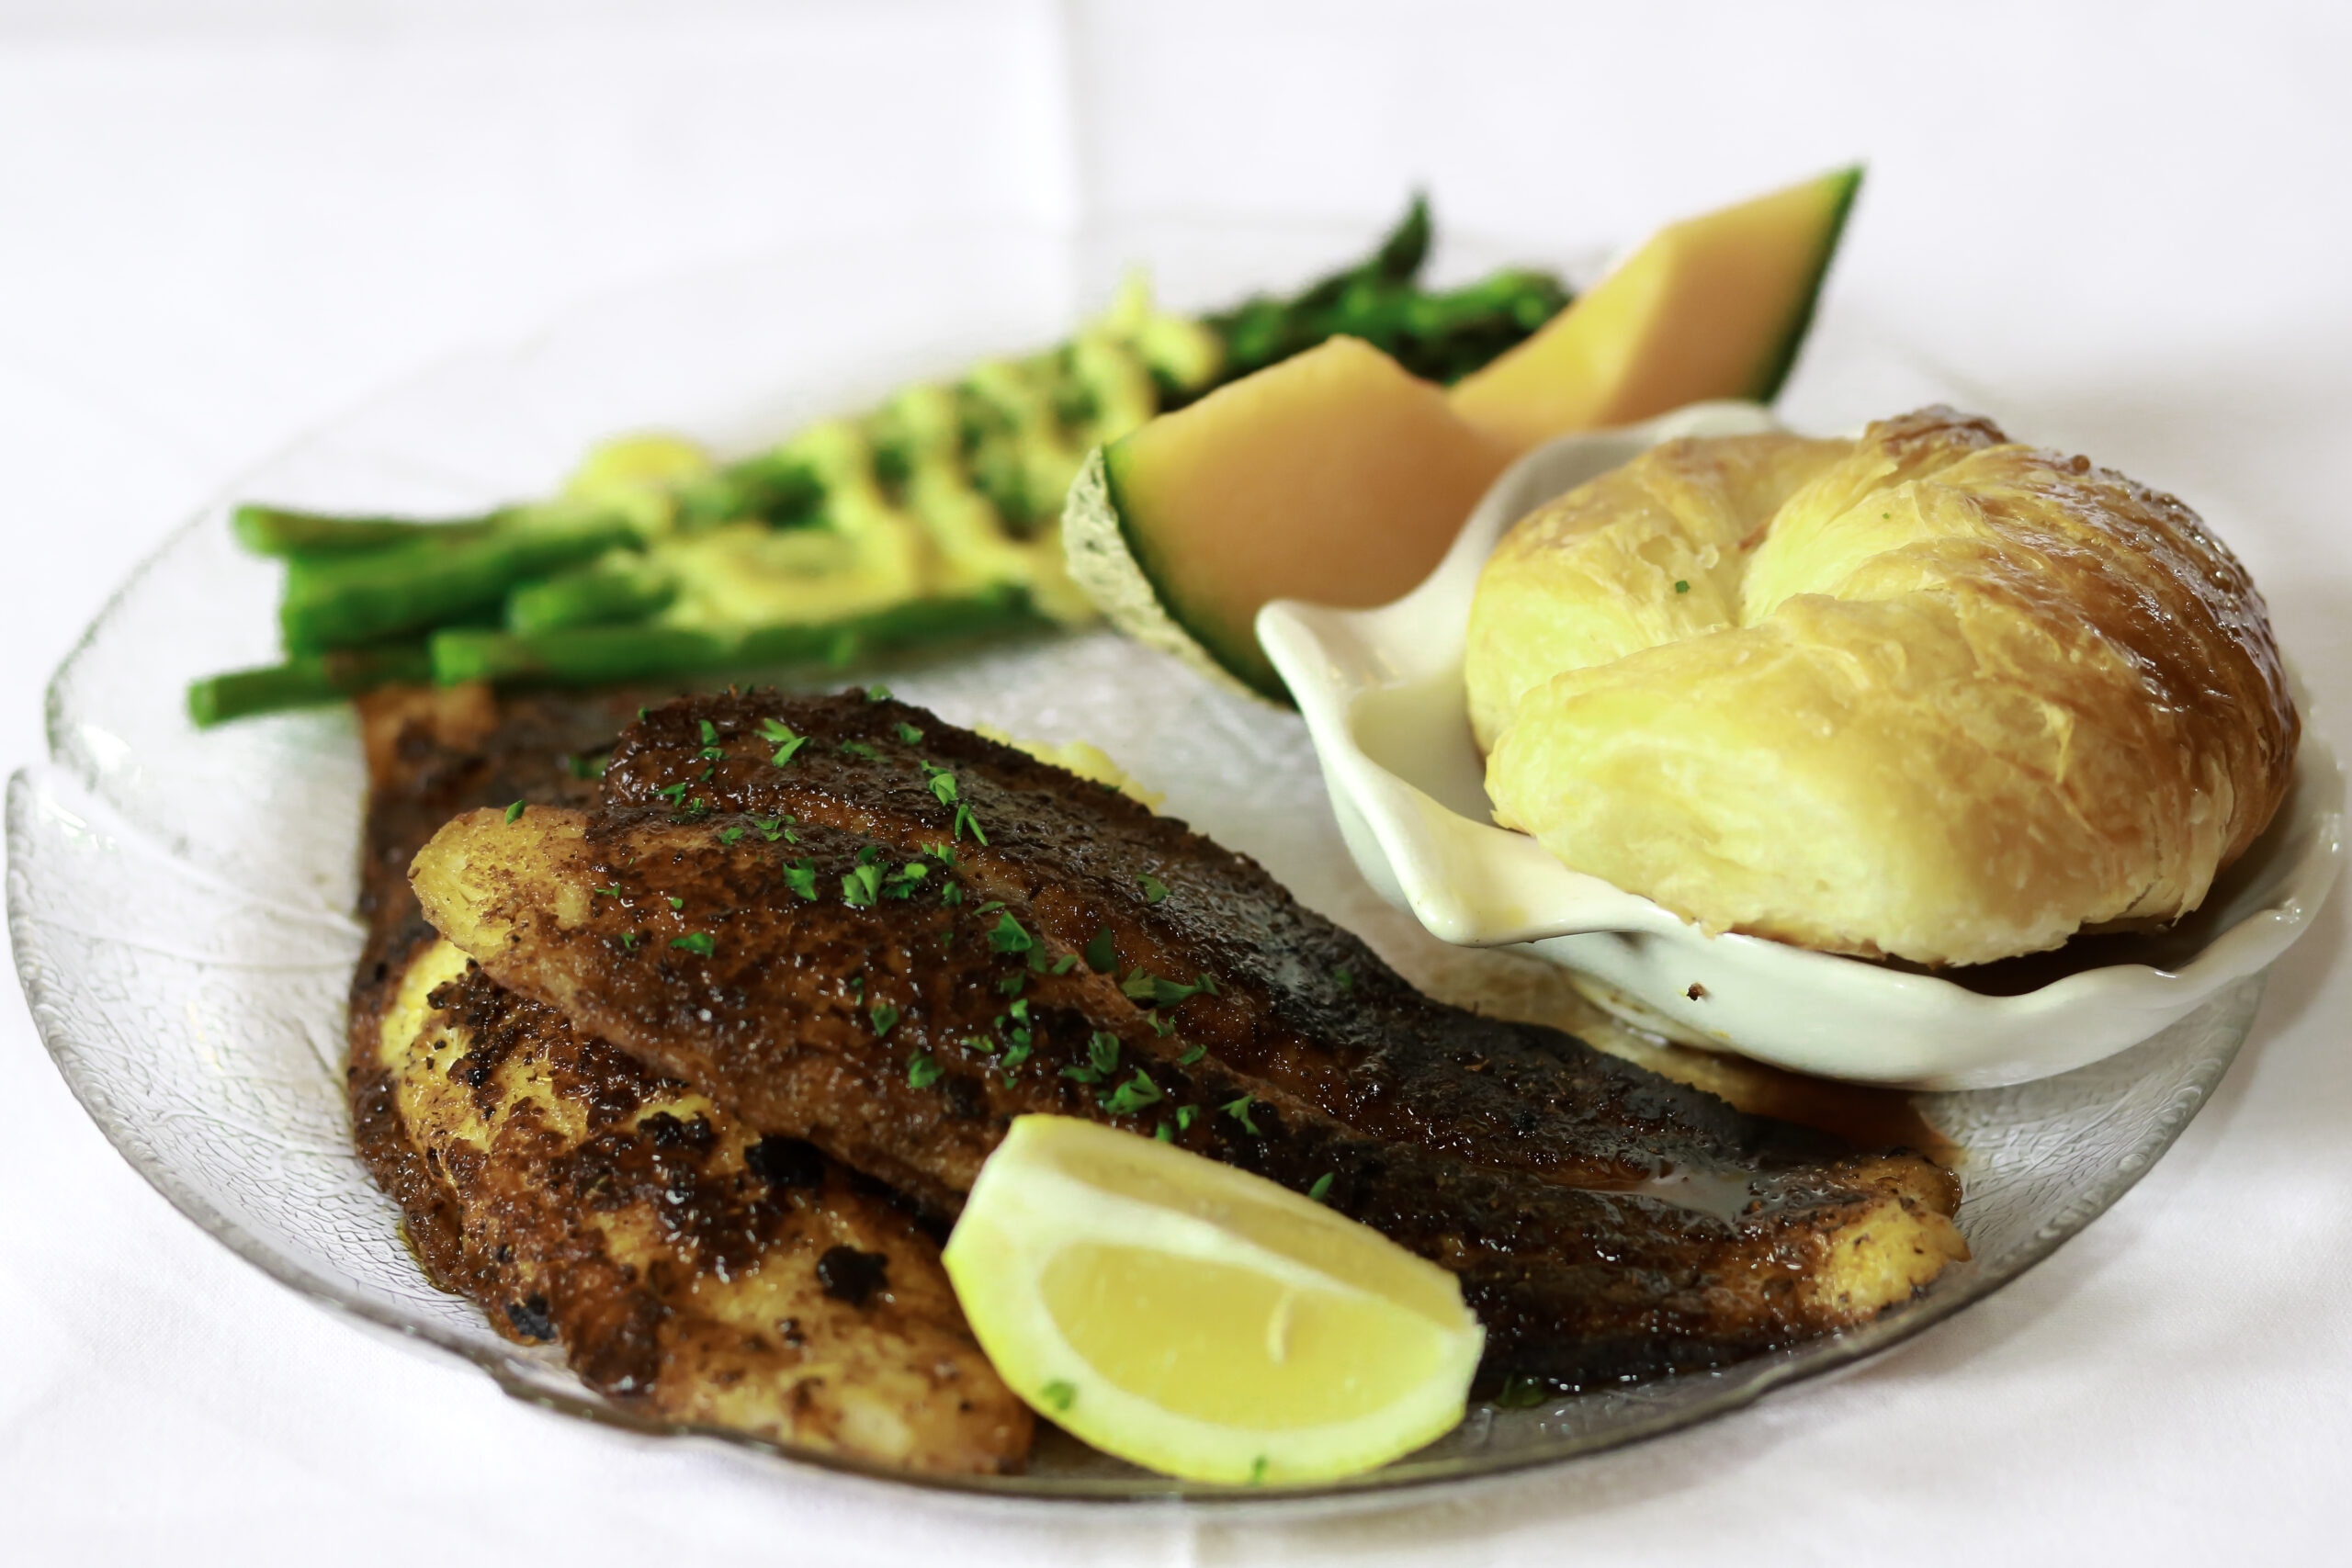 marys-restaurant-plate-herrin-illinois